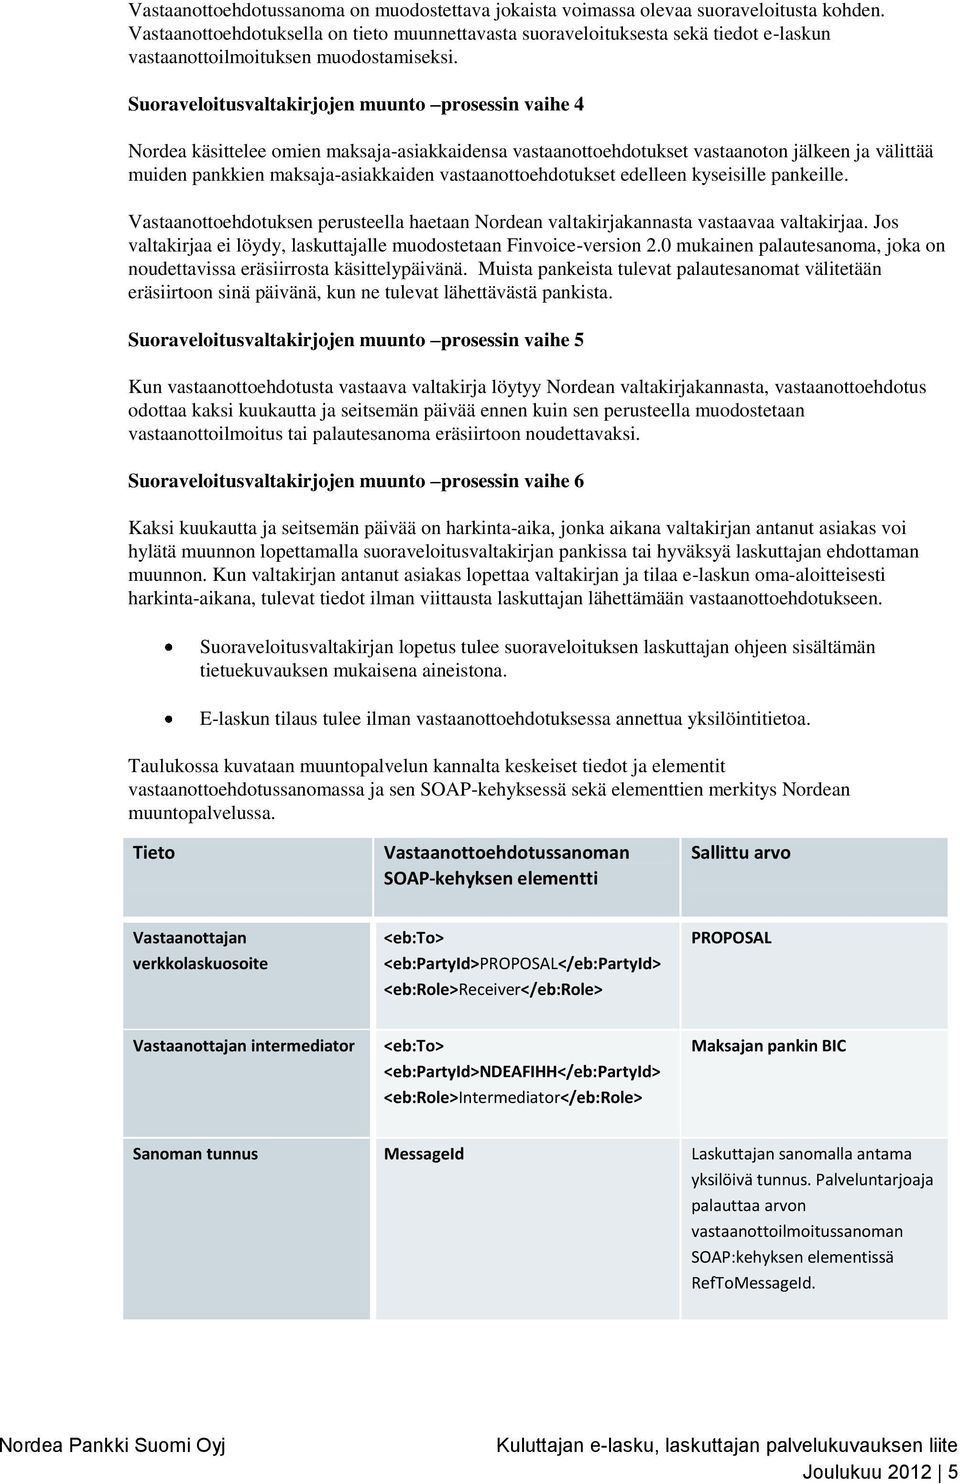 Suoraveloitusvaltakirjojen muunto prosessin vaihe 4 Nordea käsittelee omien maksaja-asiakkaidensa vastaanottoehdotukset vastaanoton jälkeen ja välittää muiden pankkien maksaja-asiakkaiden